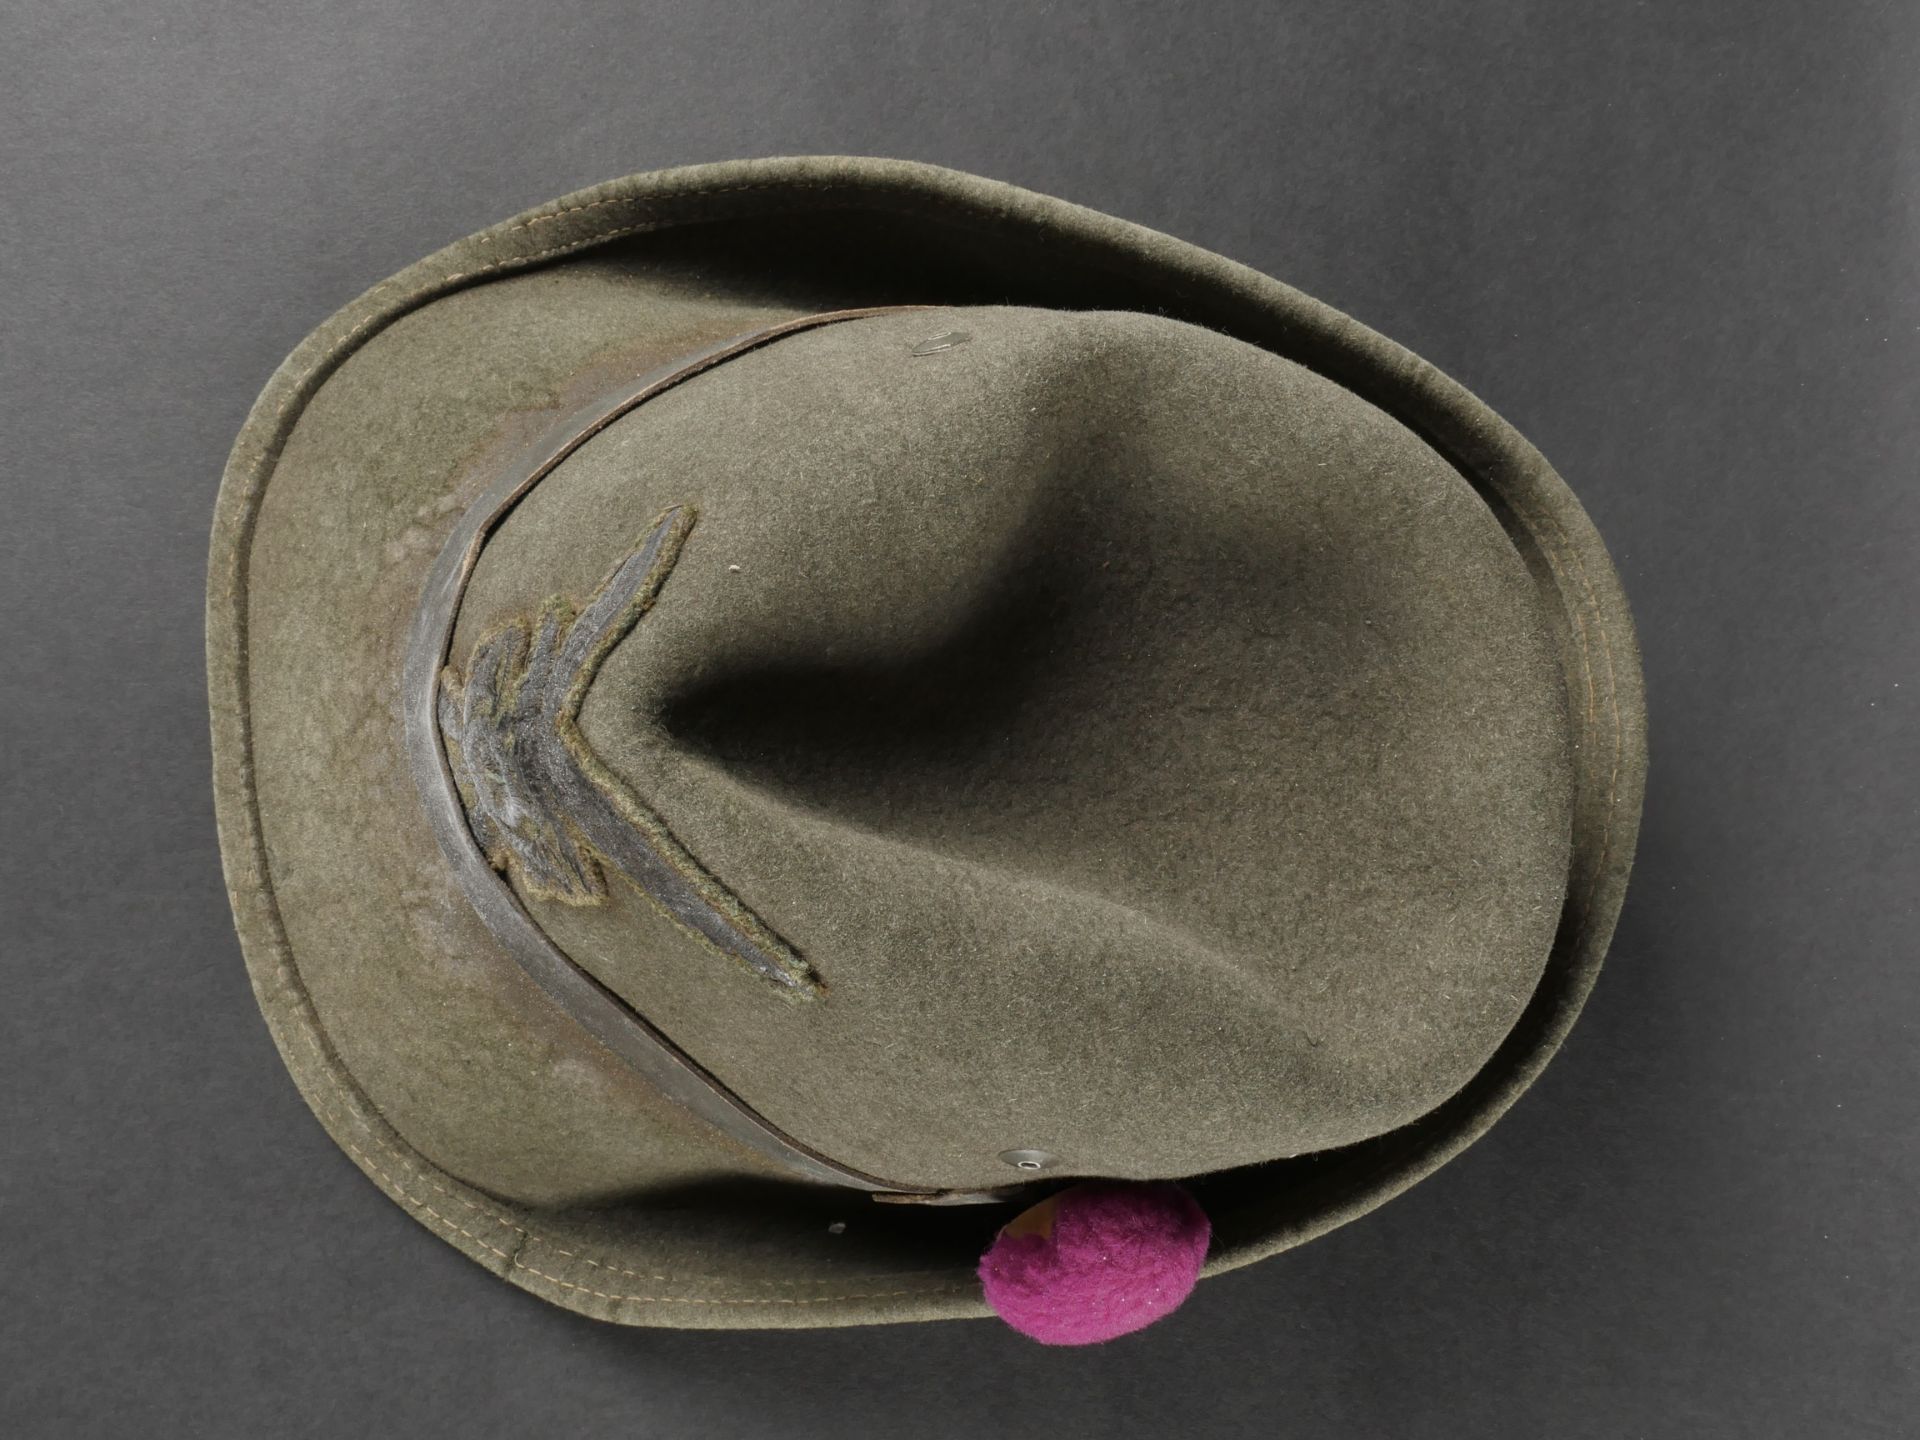 Trois chapeaux des troupes de Montagne. Three mountain troop hats. - Image 4 of 19